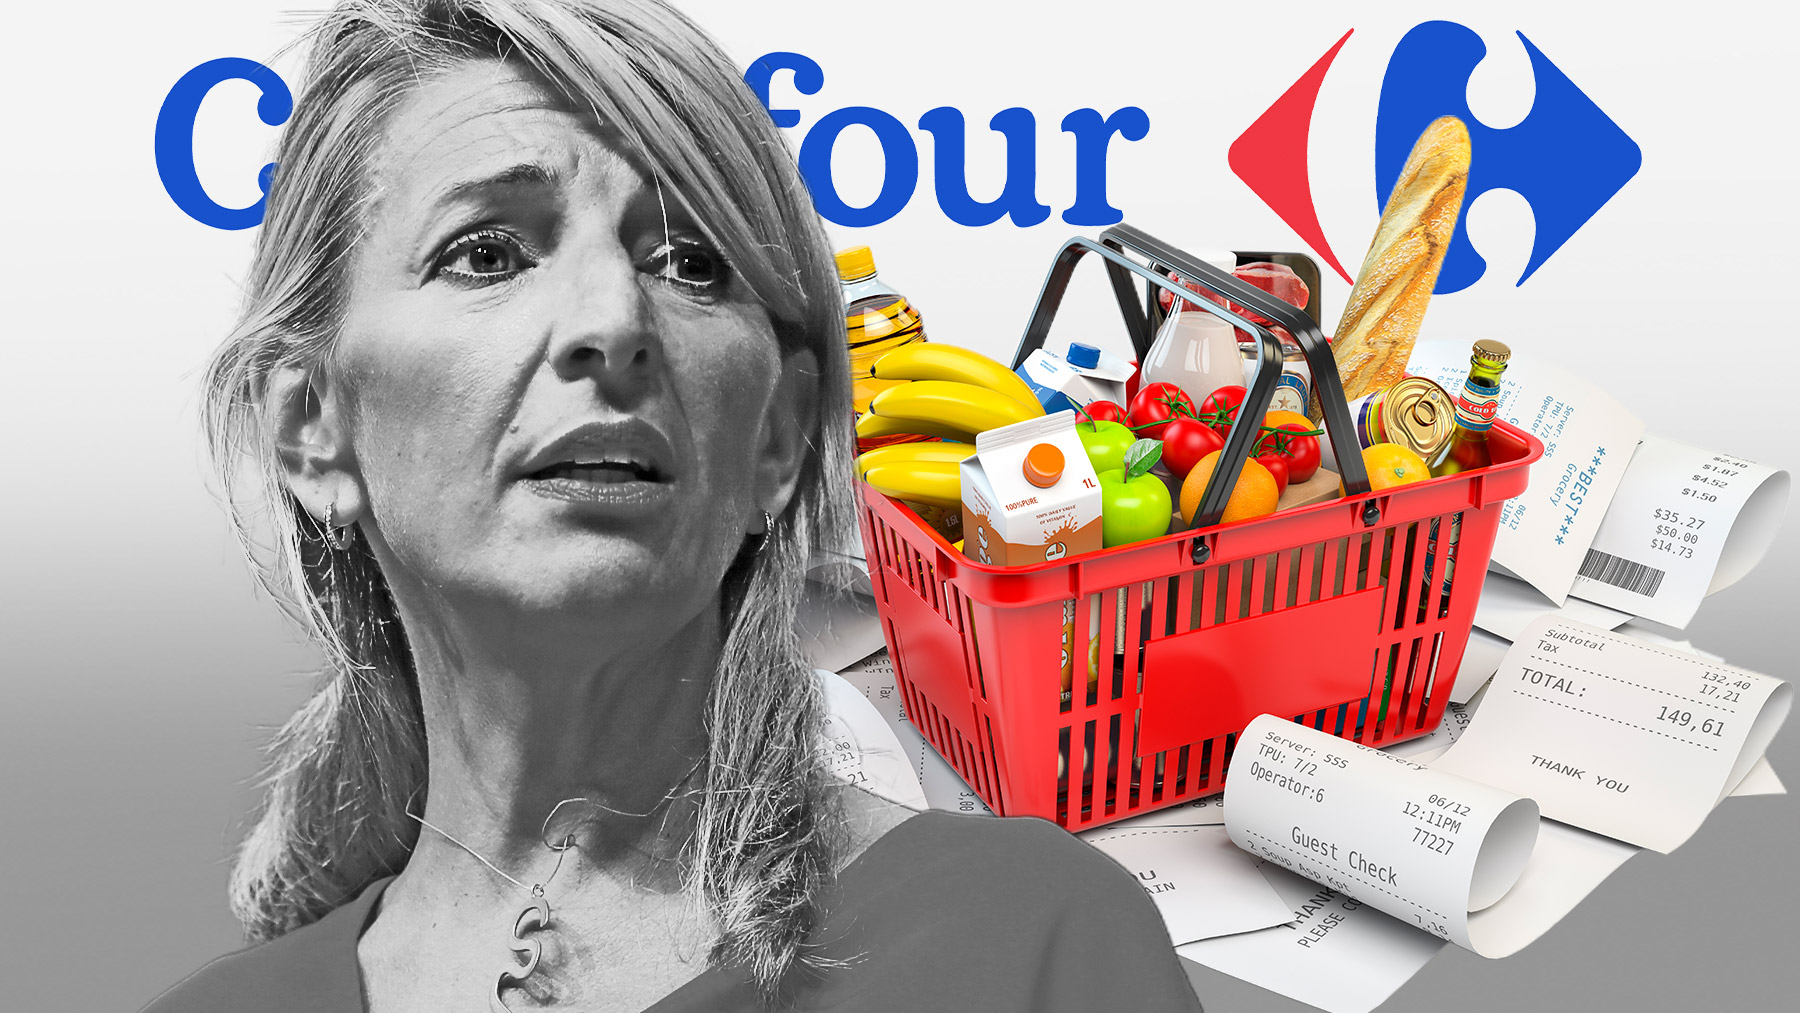 Indignación en los supermercados por el oportunismo de Carrefour al venderse a Yolanda Díaz